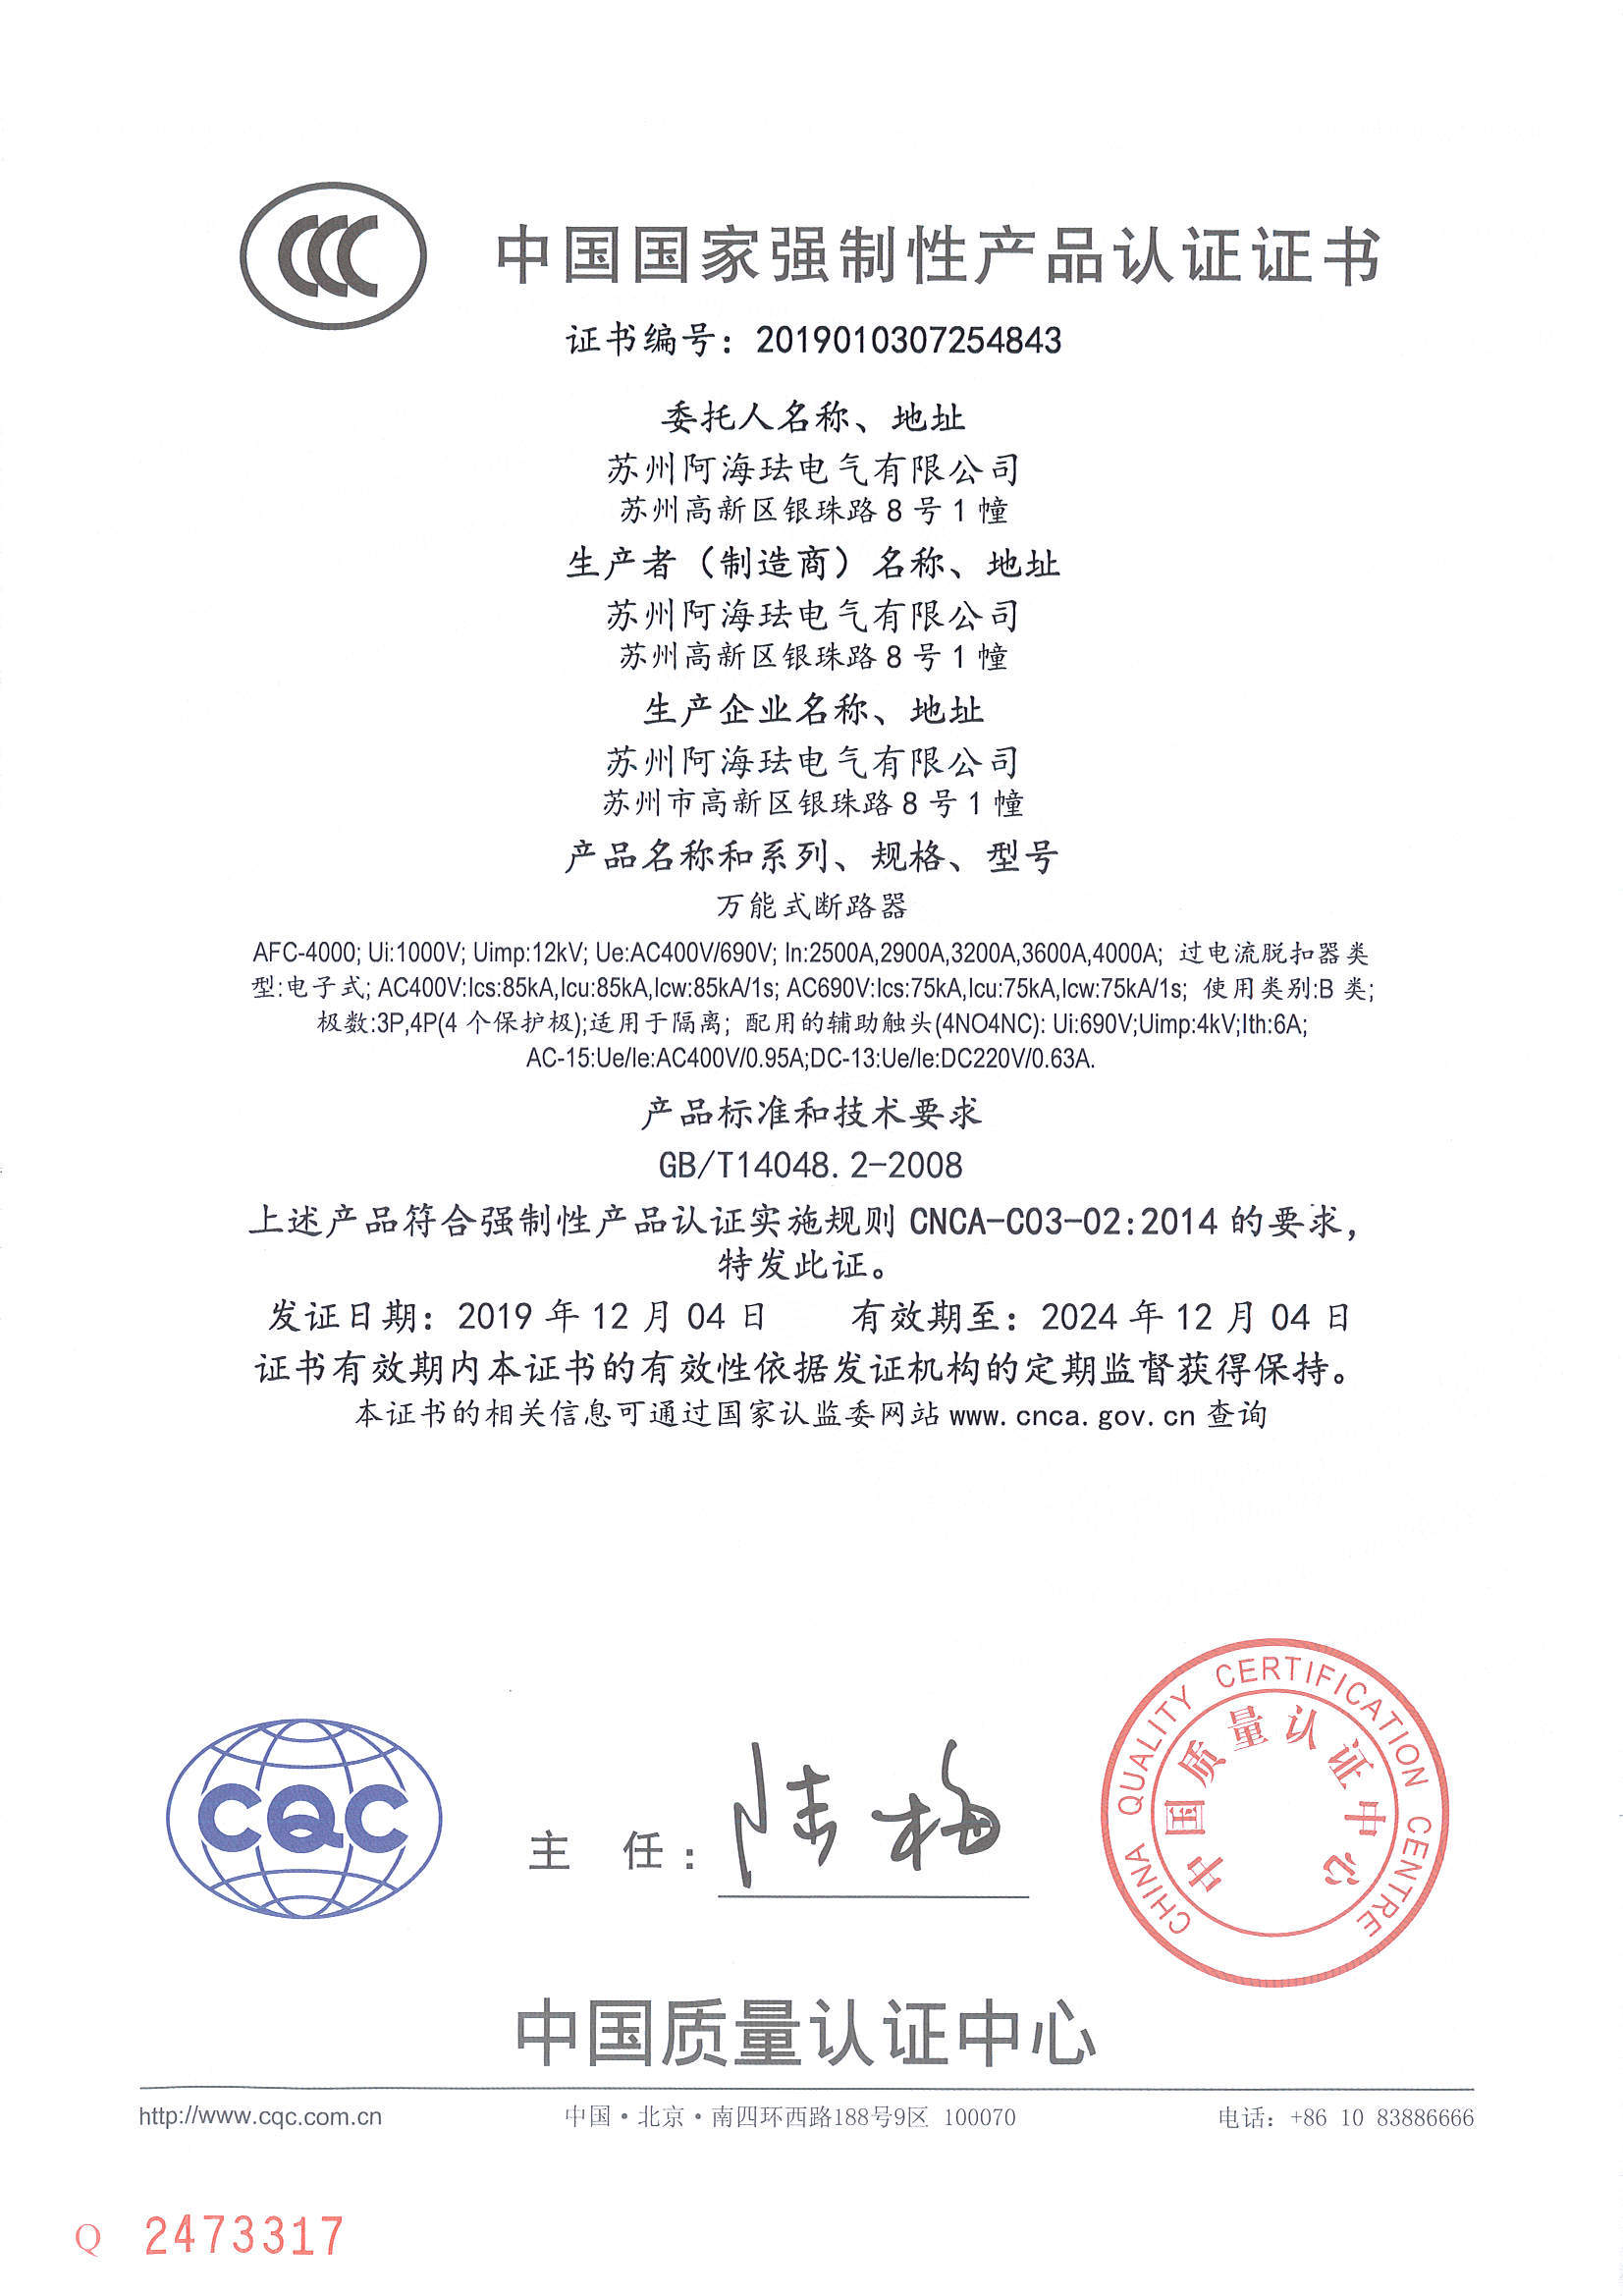 AFC4000 CCC certificate